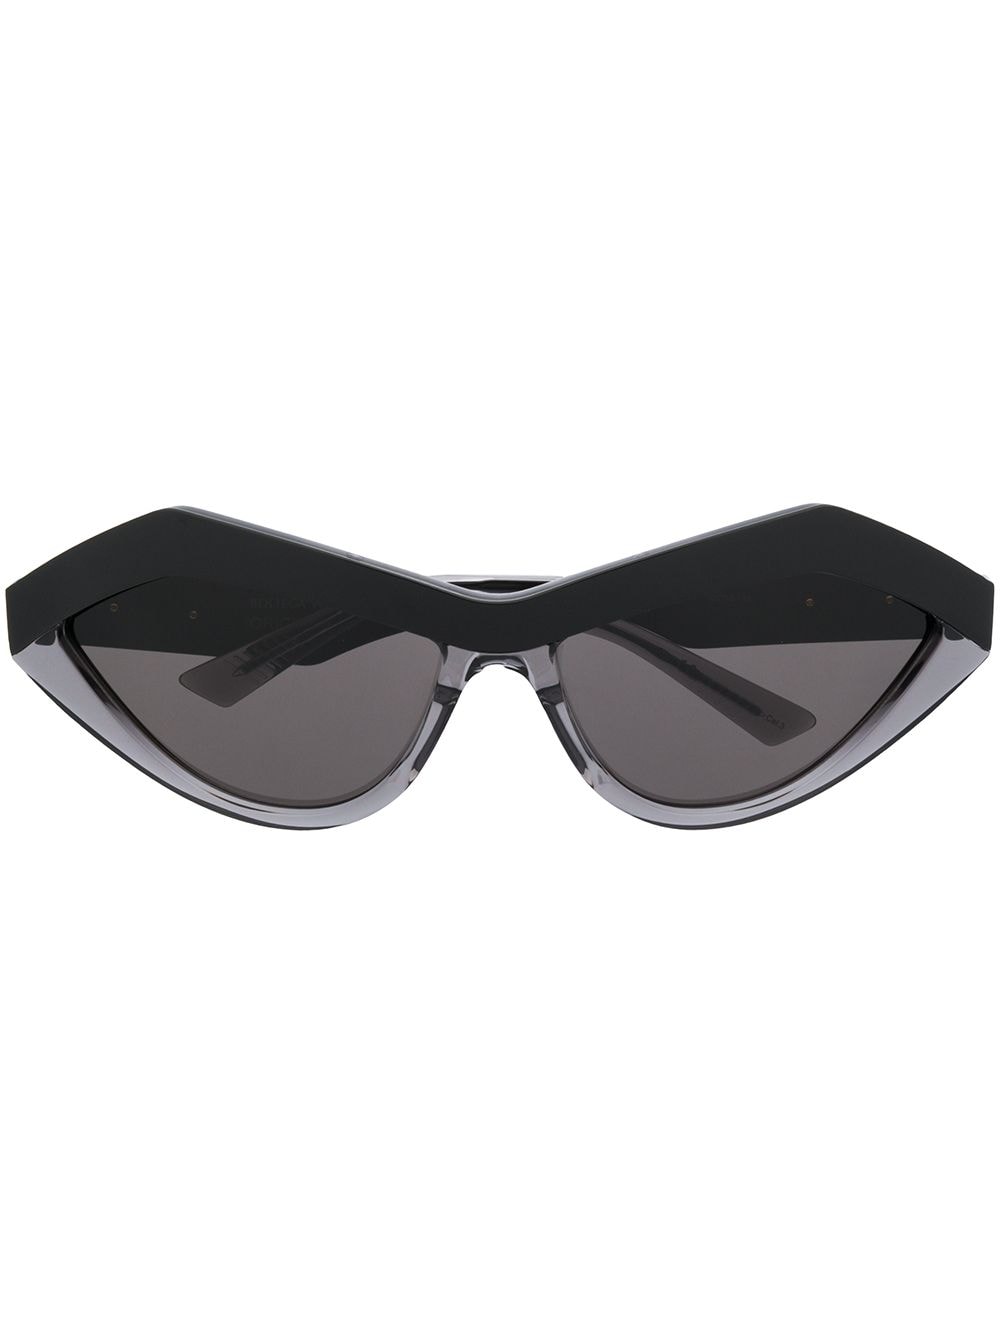 фото Bottega veneta eyewear солнцезащитные очки в геометричной оправе